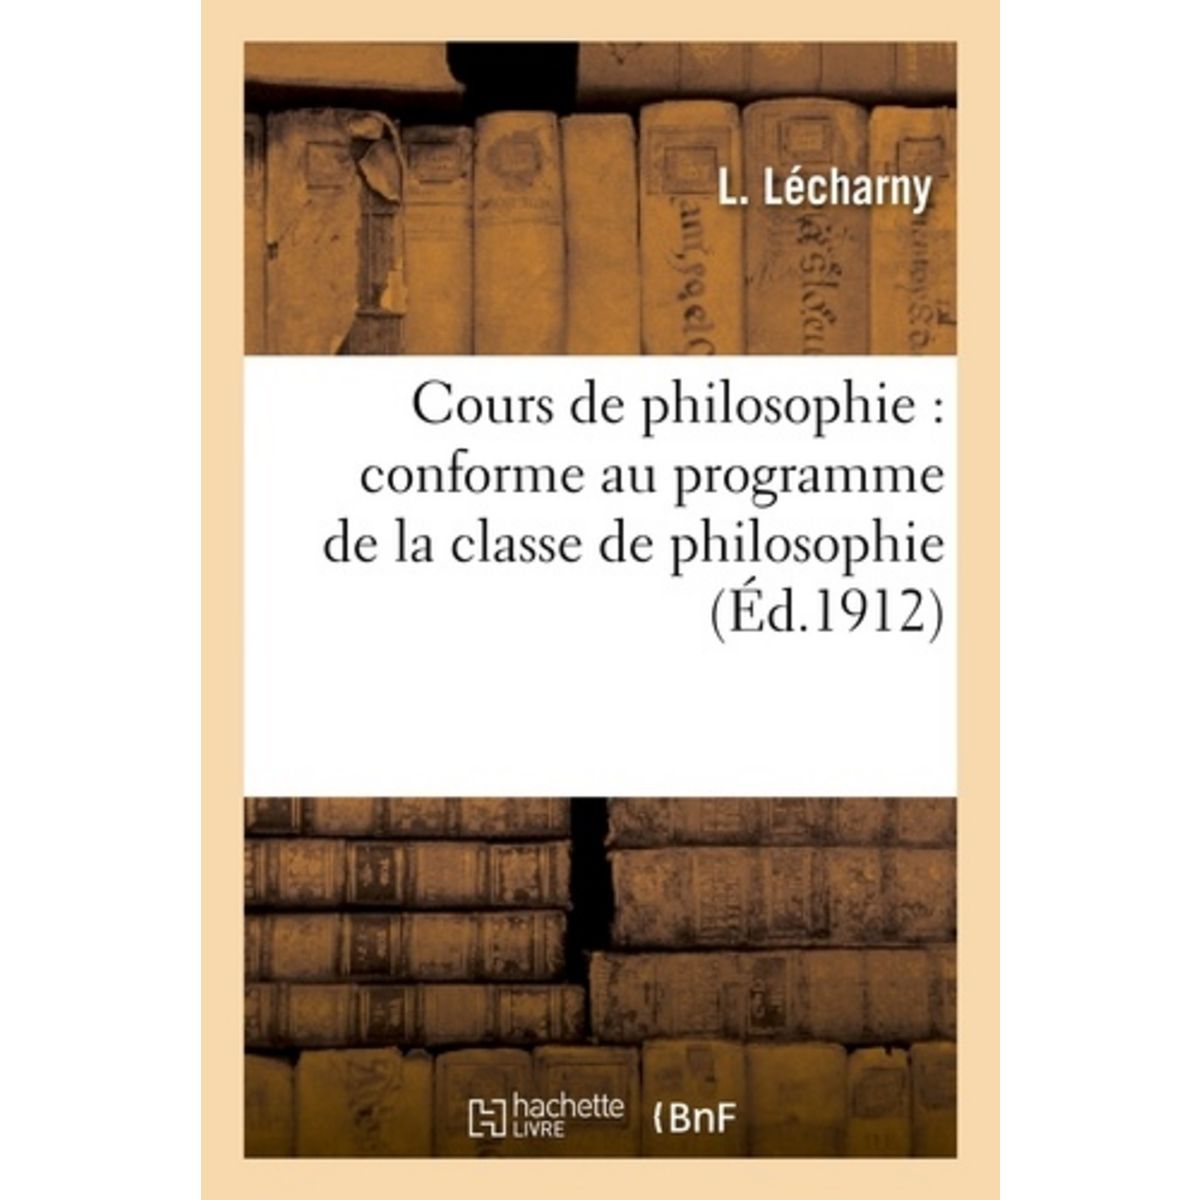  COURS DE PHILOSOPHIE : CONFORME AU PROGRAMME DE LA CLASSE DE PHILOSOPHIE, Lécharny L.